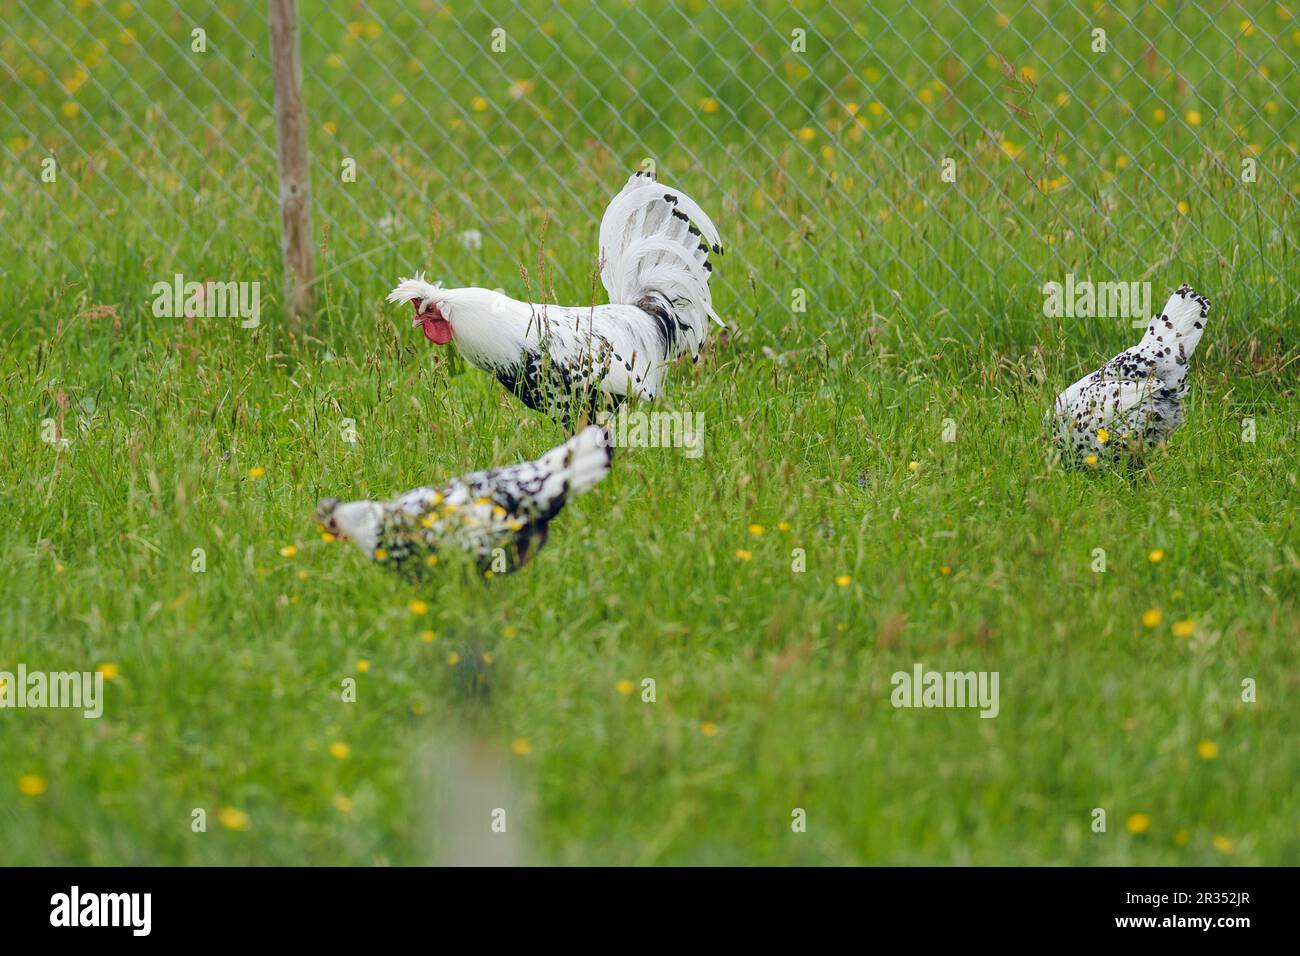 Coq, poule et poulet sur un pré vert Banque D'Images